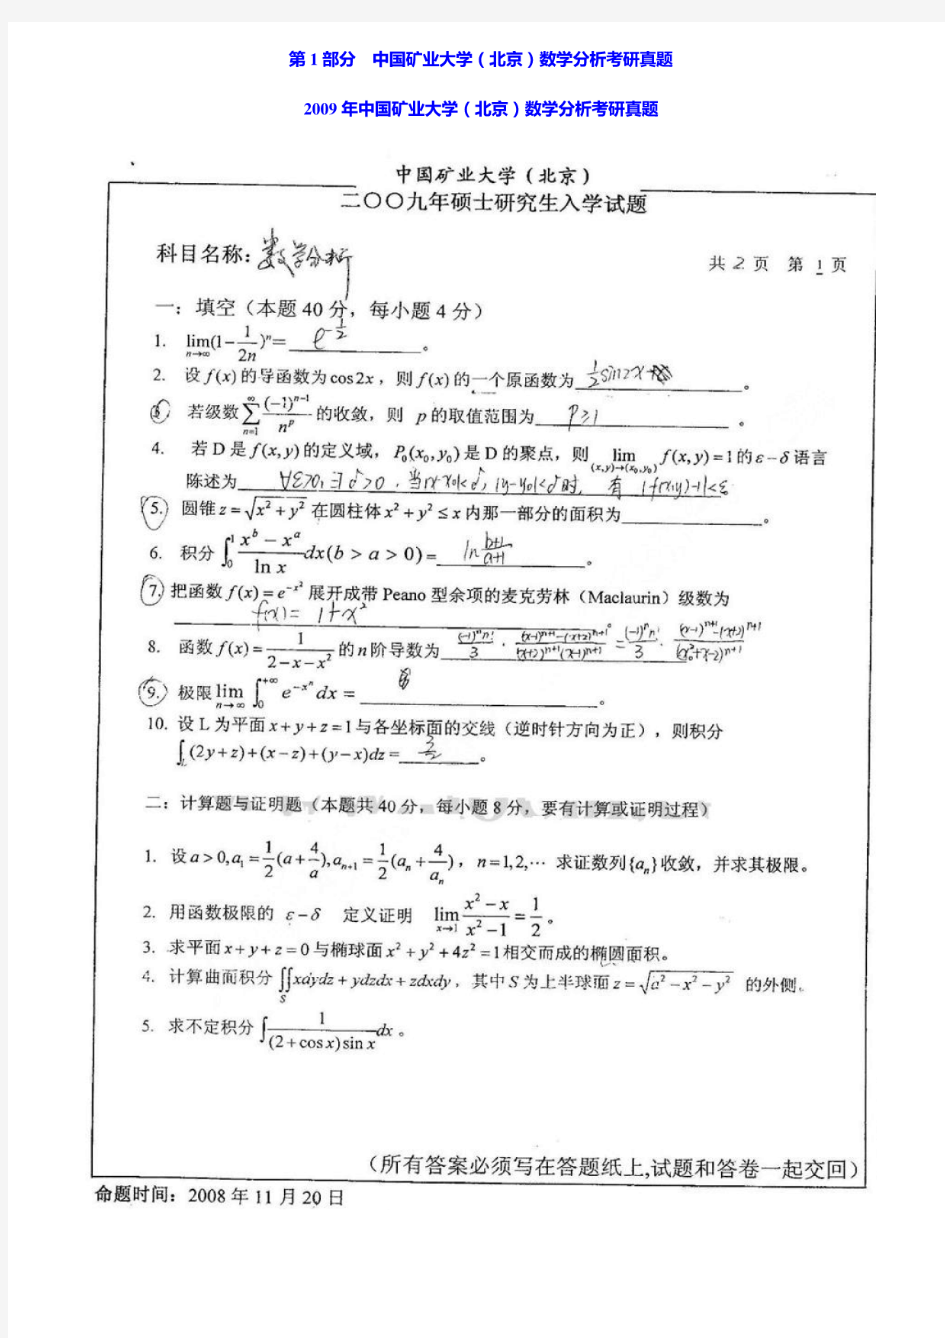 中国矿业大学(北京)602数学分析05-09年真题